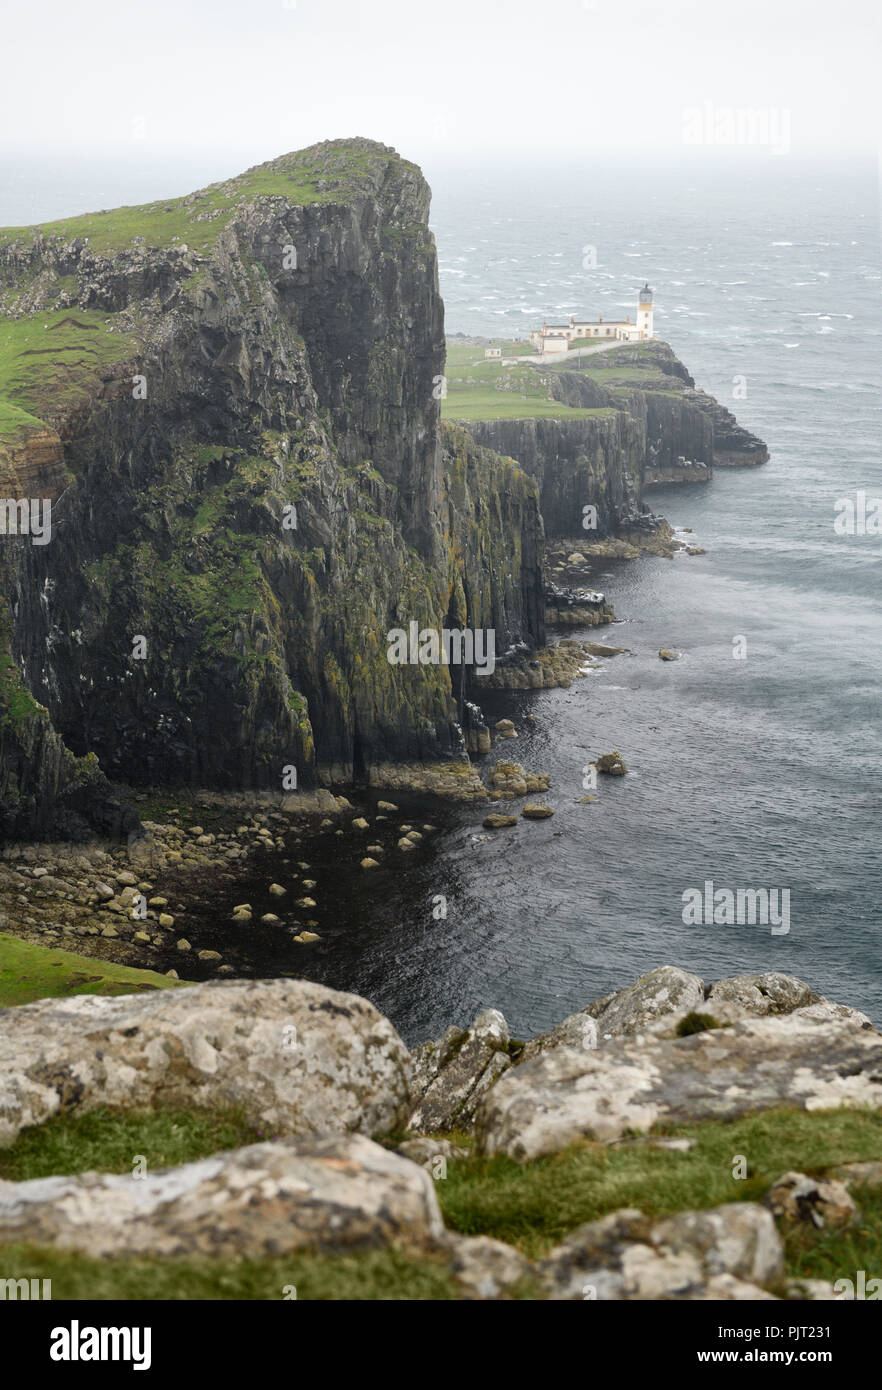 Neist Point Lighthouse Bei Starkem Wind Und Regen Mit Steilen Basaltfelsen Zu Oisgill Bay Atlantic Ocean Isle Of Skye Schottland Grossbritannien Stockfotografie Alamy